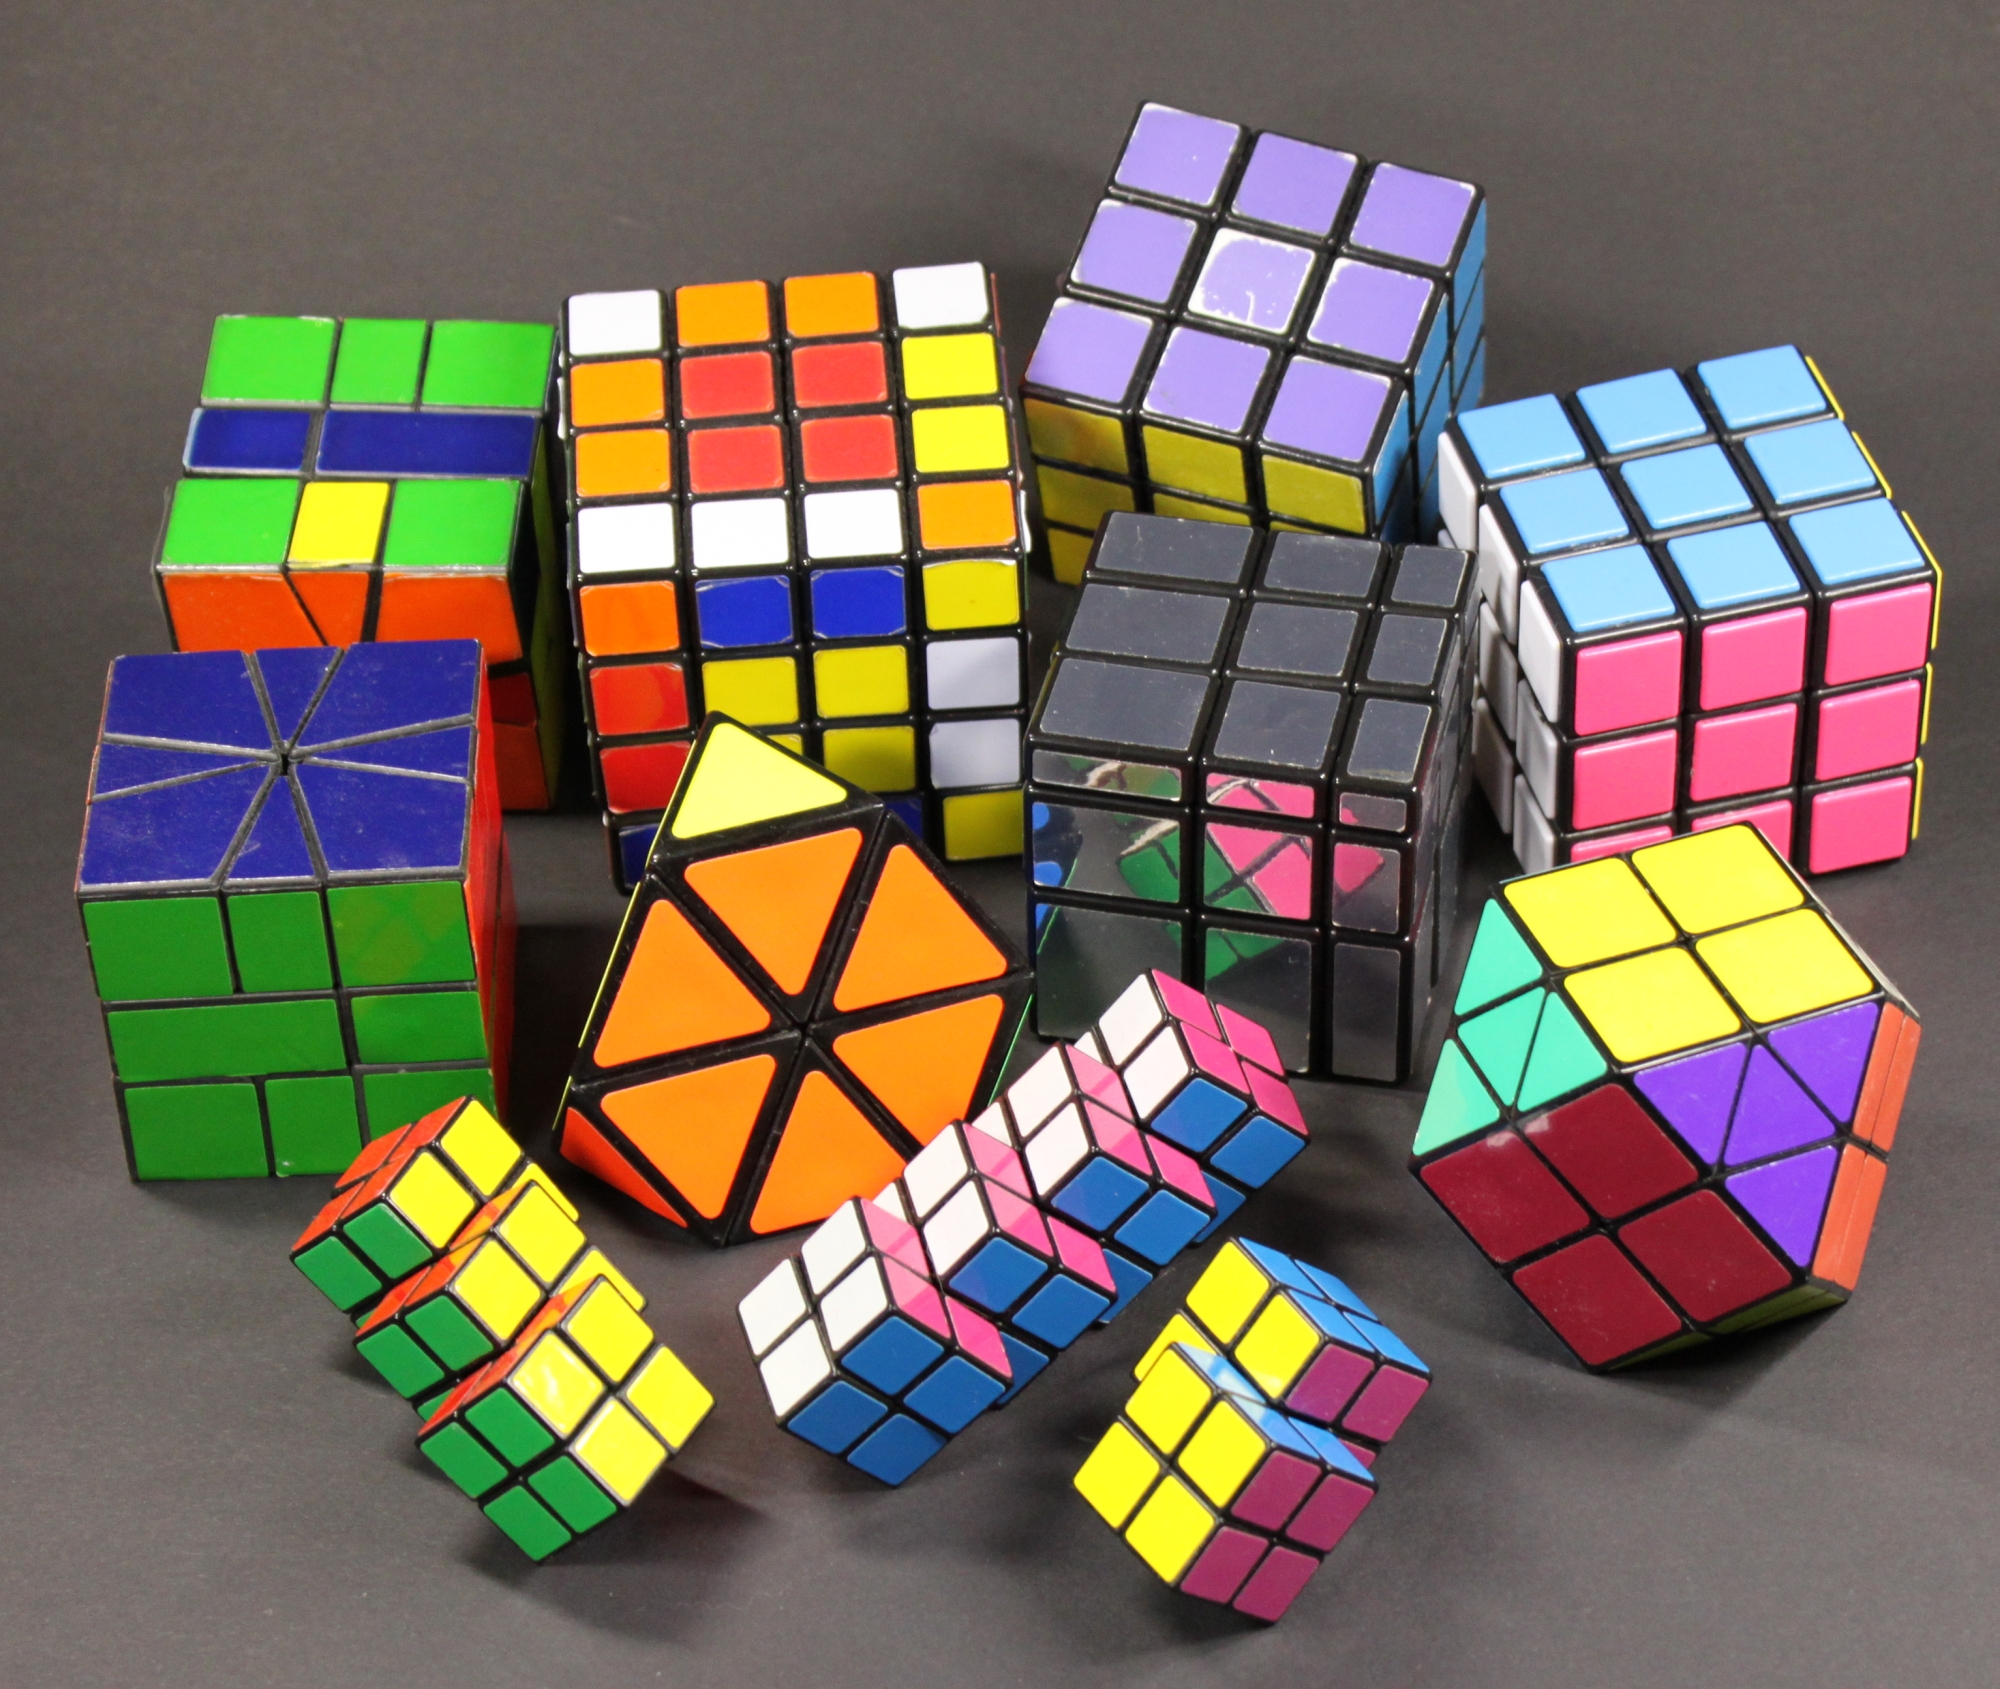 3. Khám phá những luồng suy nghĩ đặc biệt khi thực hiện Rubik 4x4